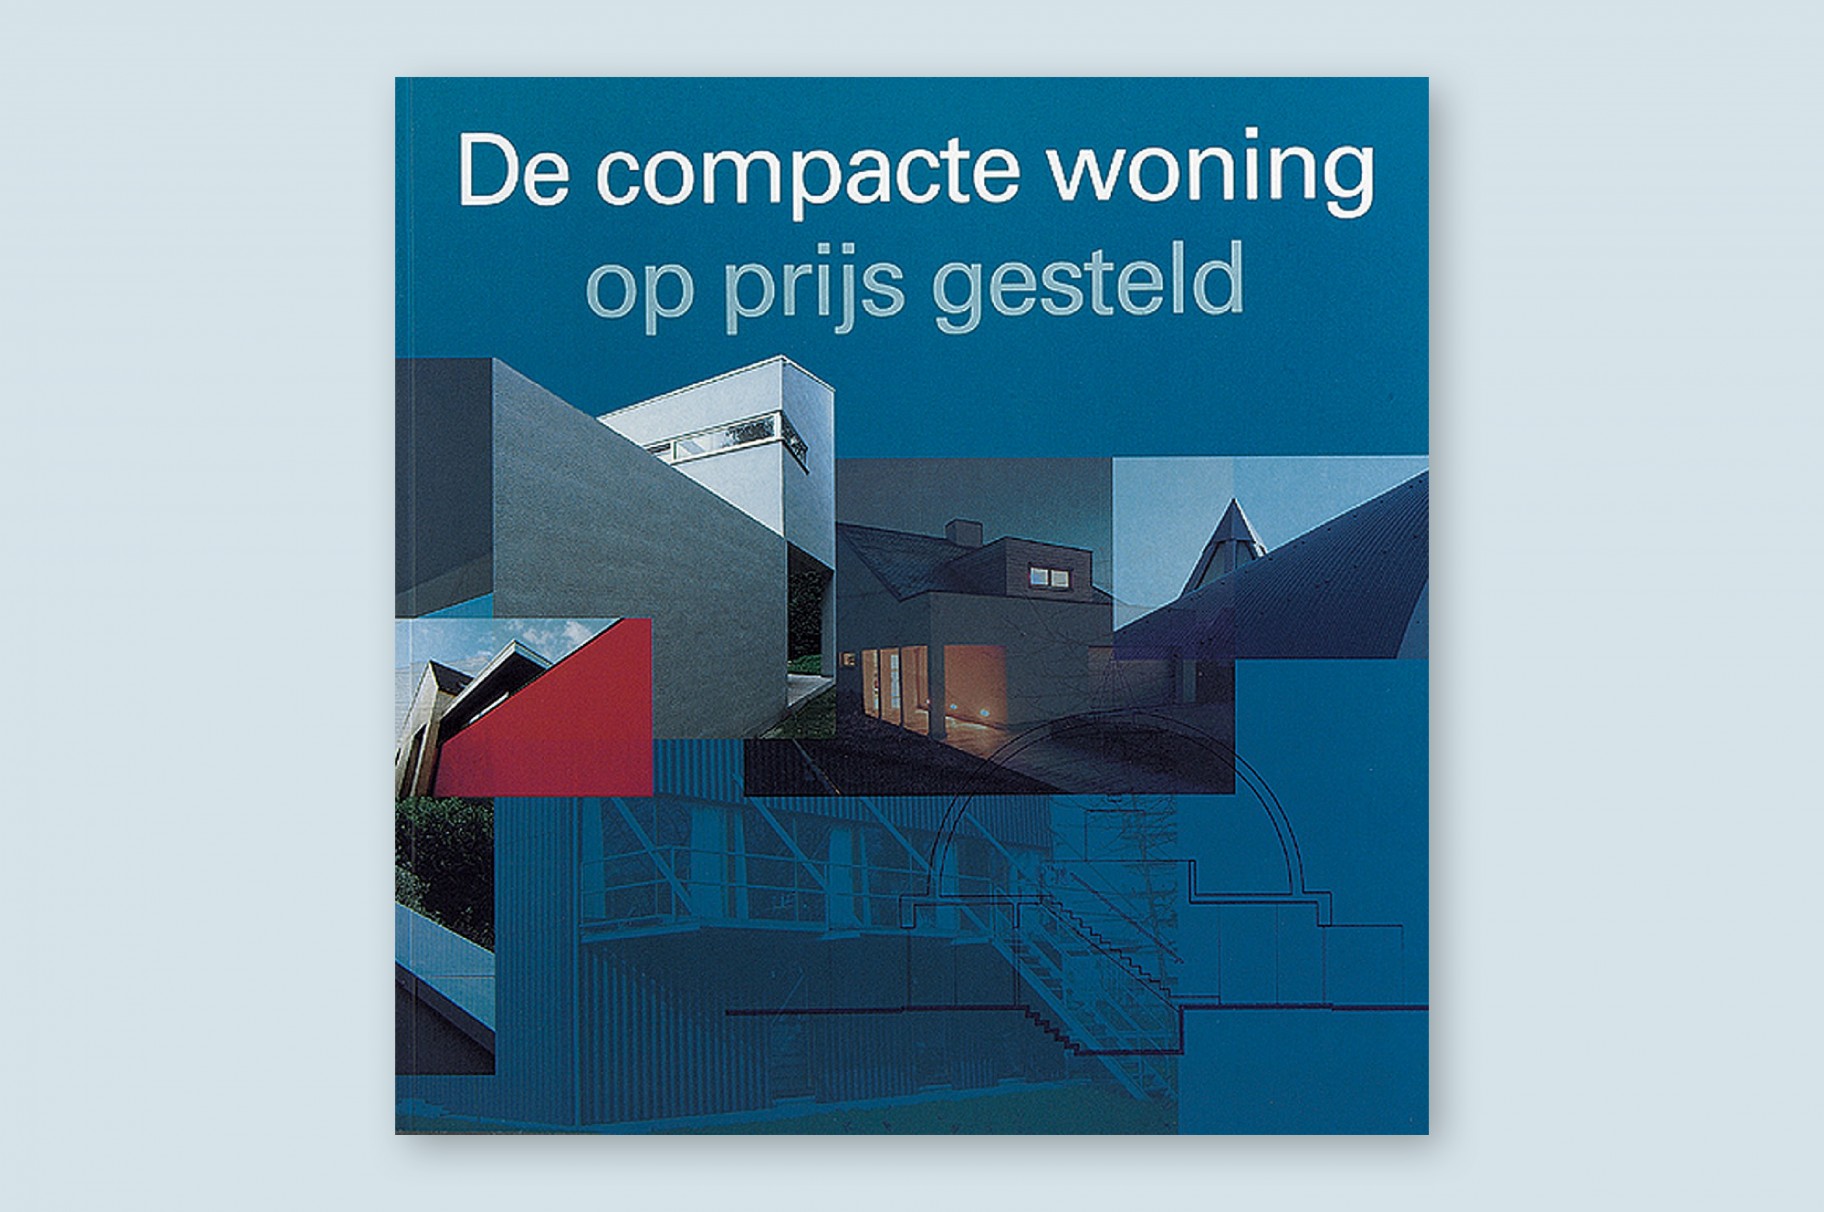 Huis De Vylder Zoersel in Stichting Kunstboek